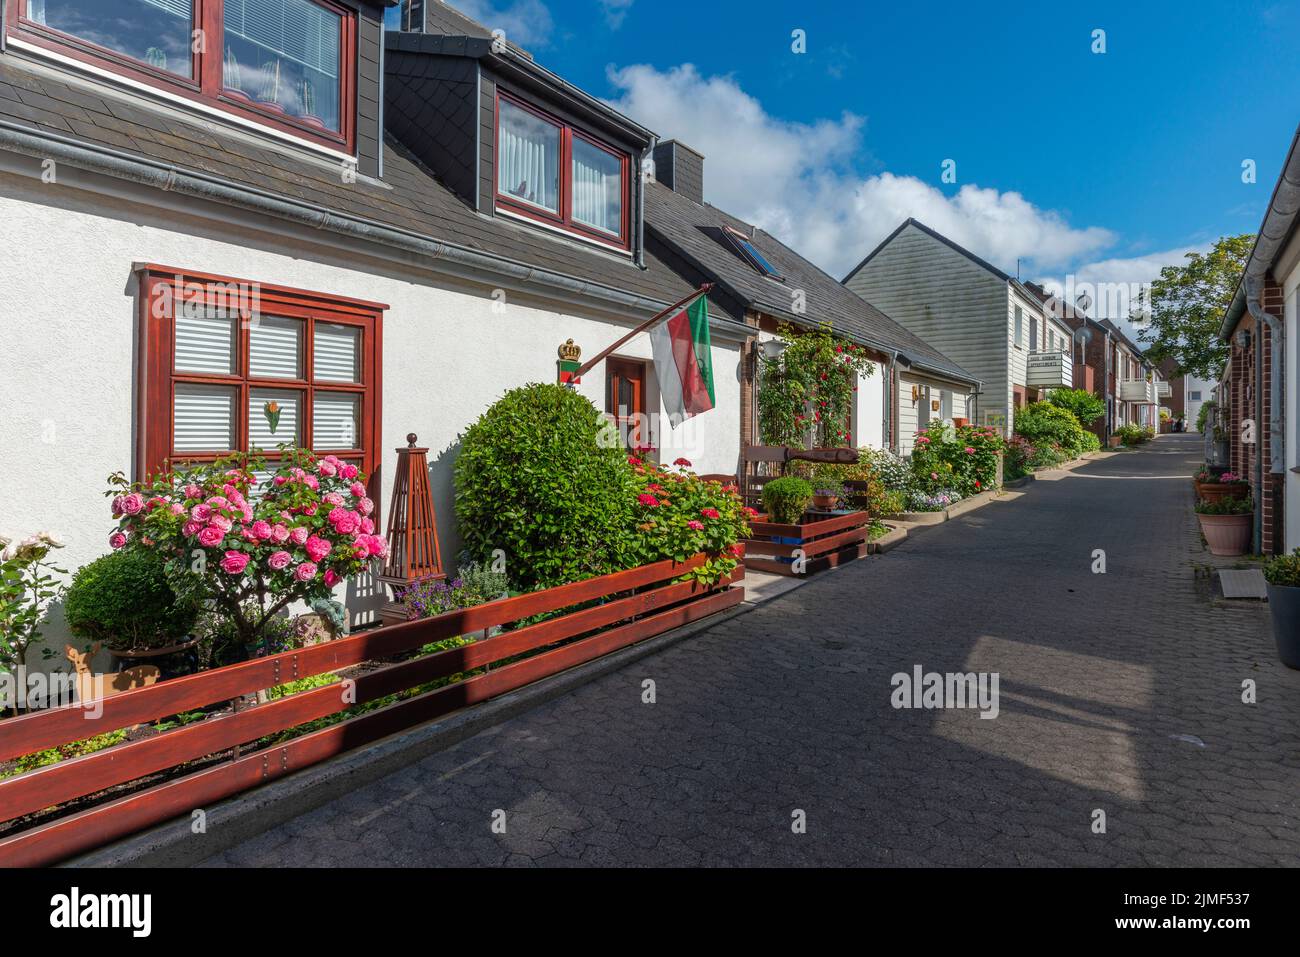 Arquitectura típica con colores de tierra y gables asimétricos en la Alta Tierra de la isla del Mar del Norte Heligoland, Schleswig-Holstein, norte de Alemania Foto de stock